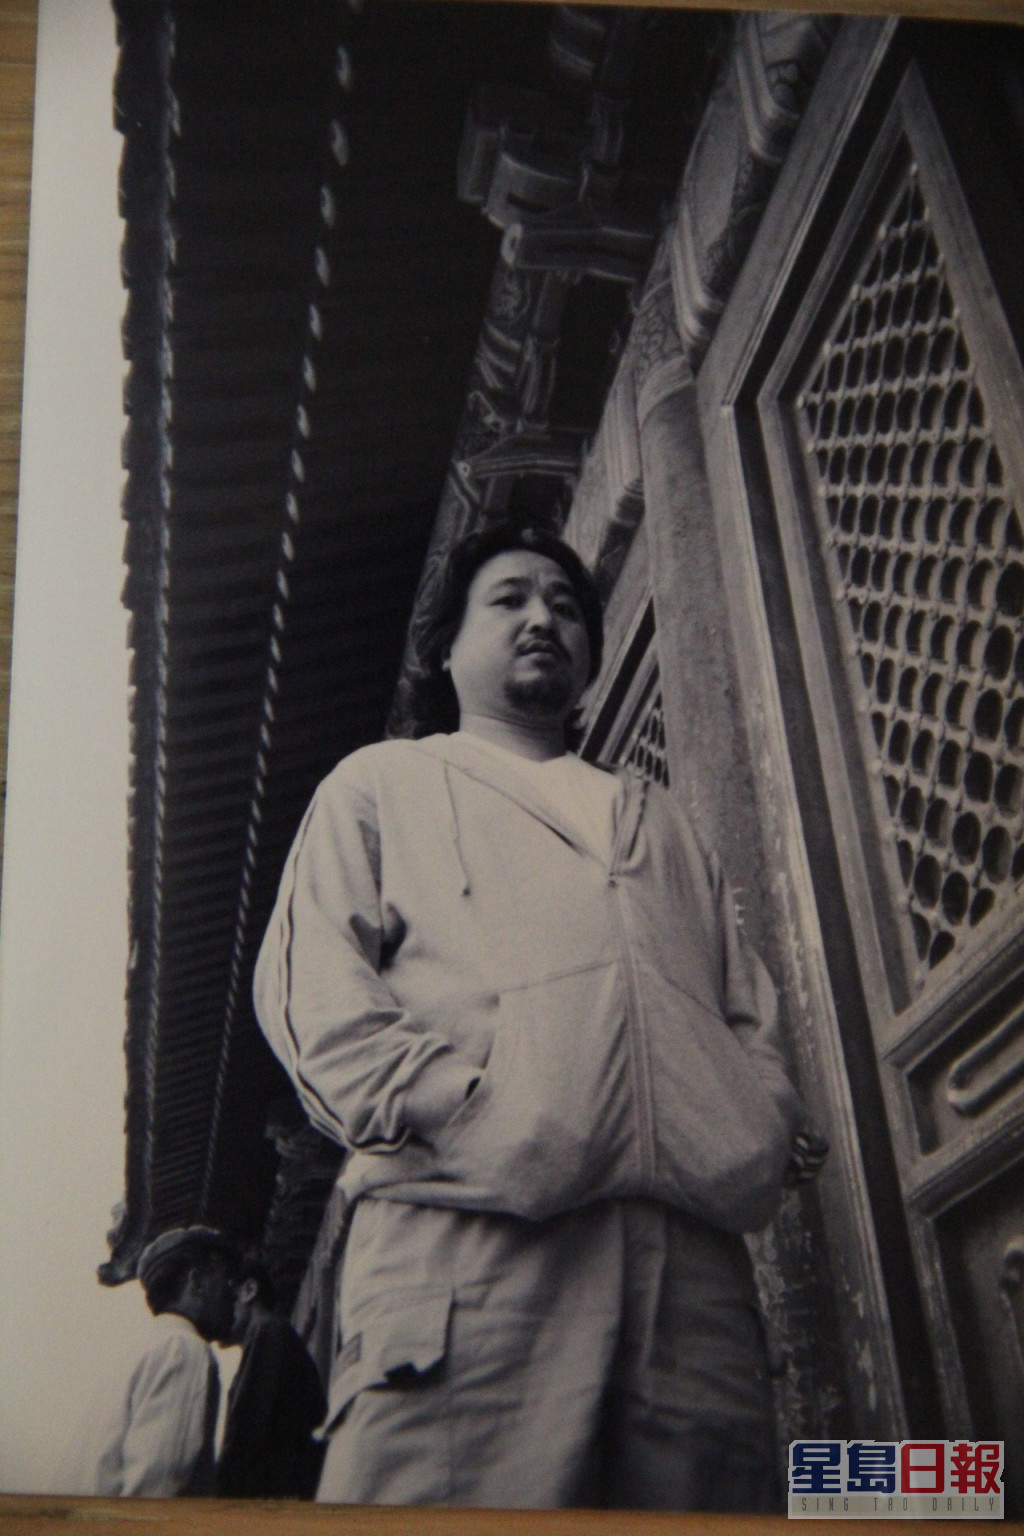 古明華早年在北京拍攝劇集《談談情練練武》。